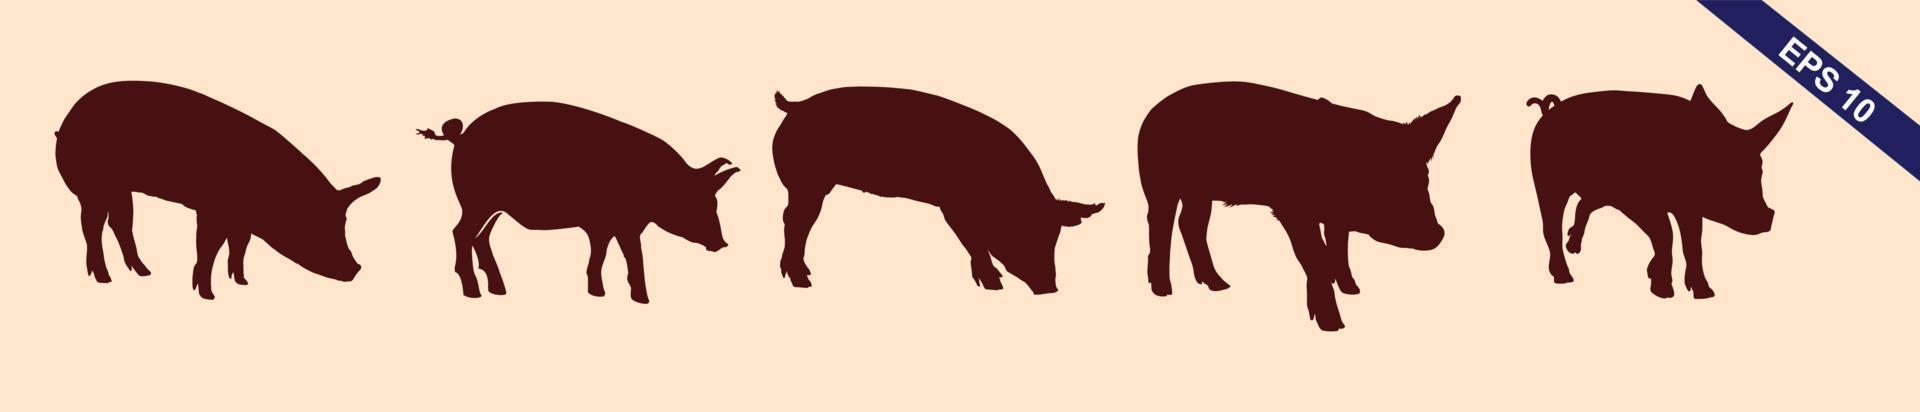 kwaliteit bruin en wit vector silhouetten van varkens